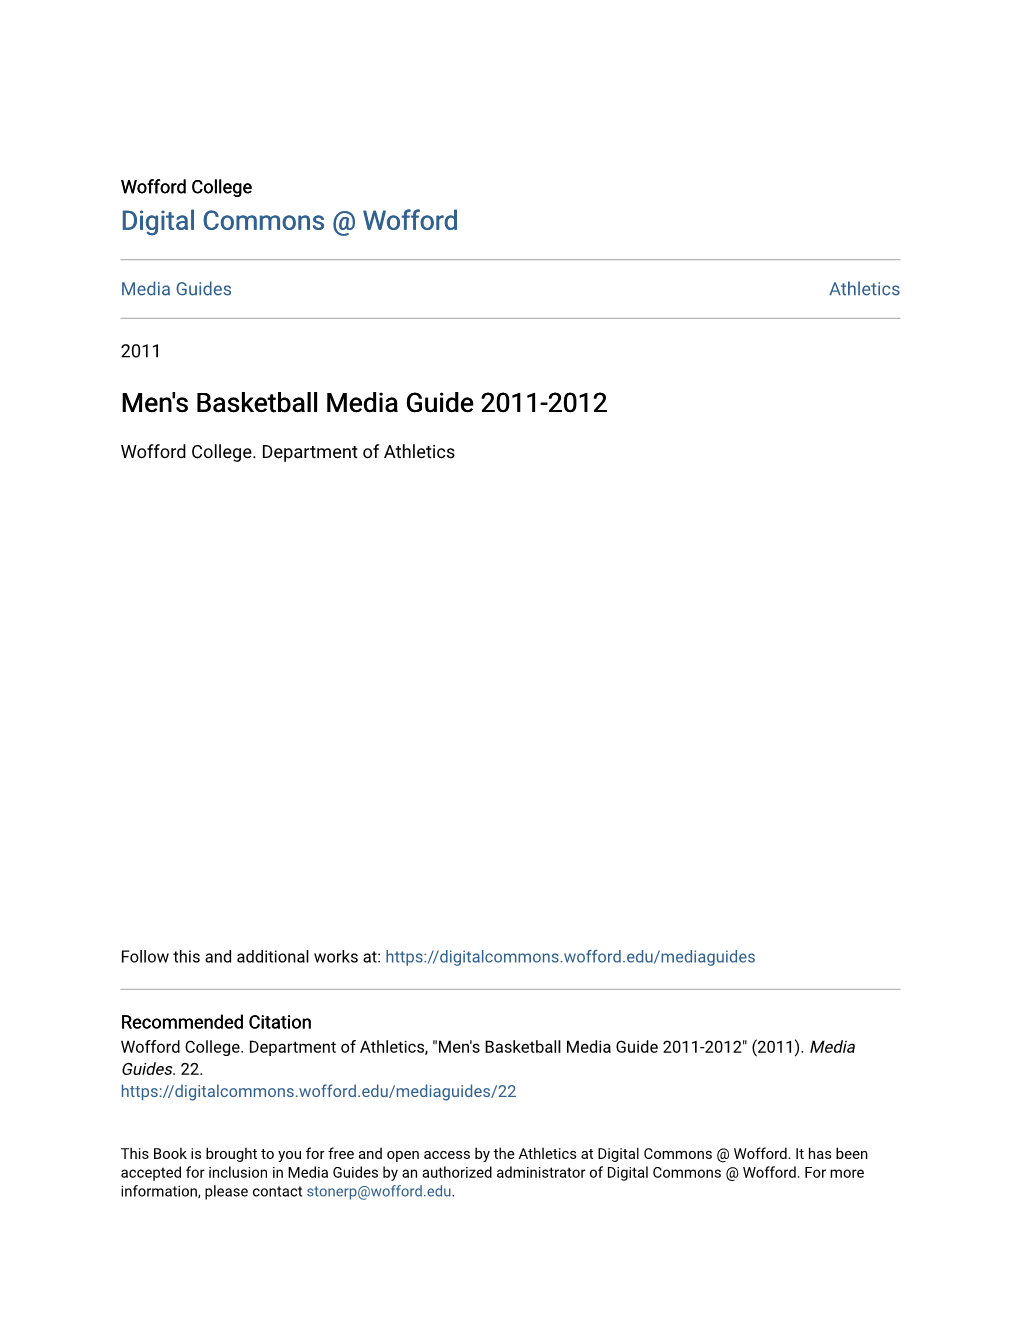 Men's Basketball Media Guide 2011-2012